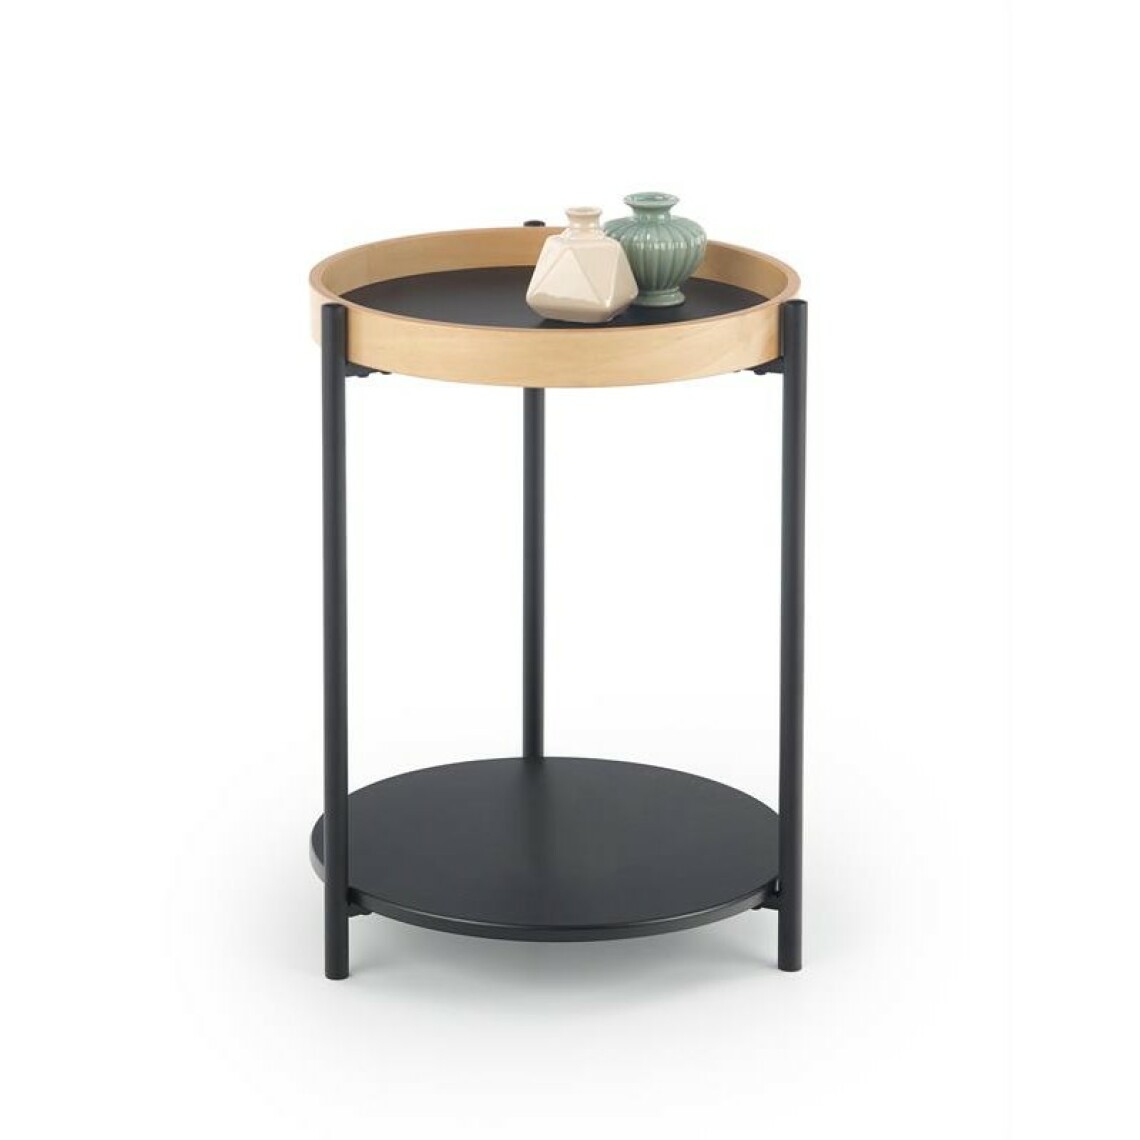 Carellia - Table basse ronde 44 cm x 55 cm - Chêne naturel/Noir - Tables basses